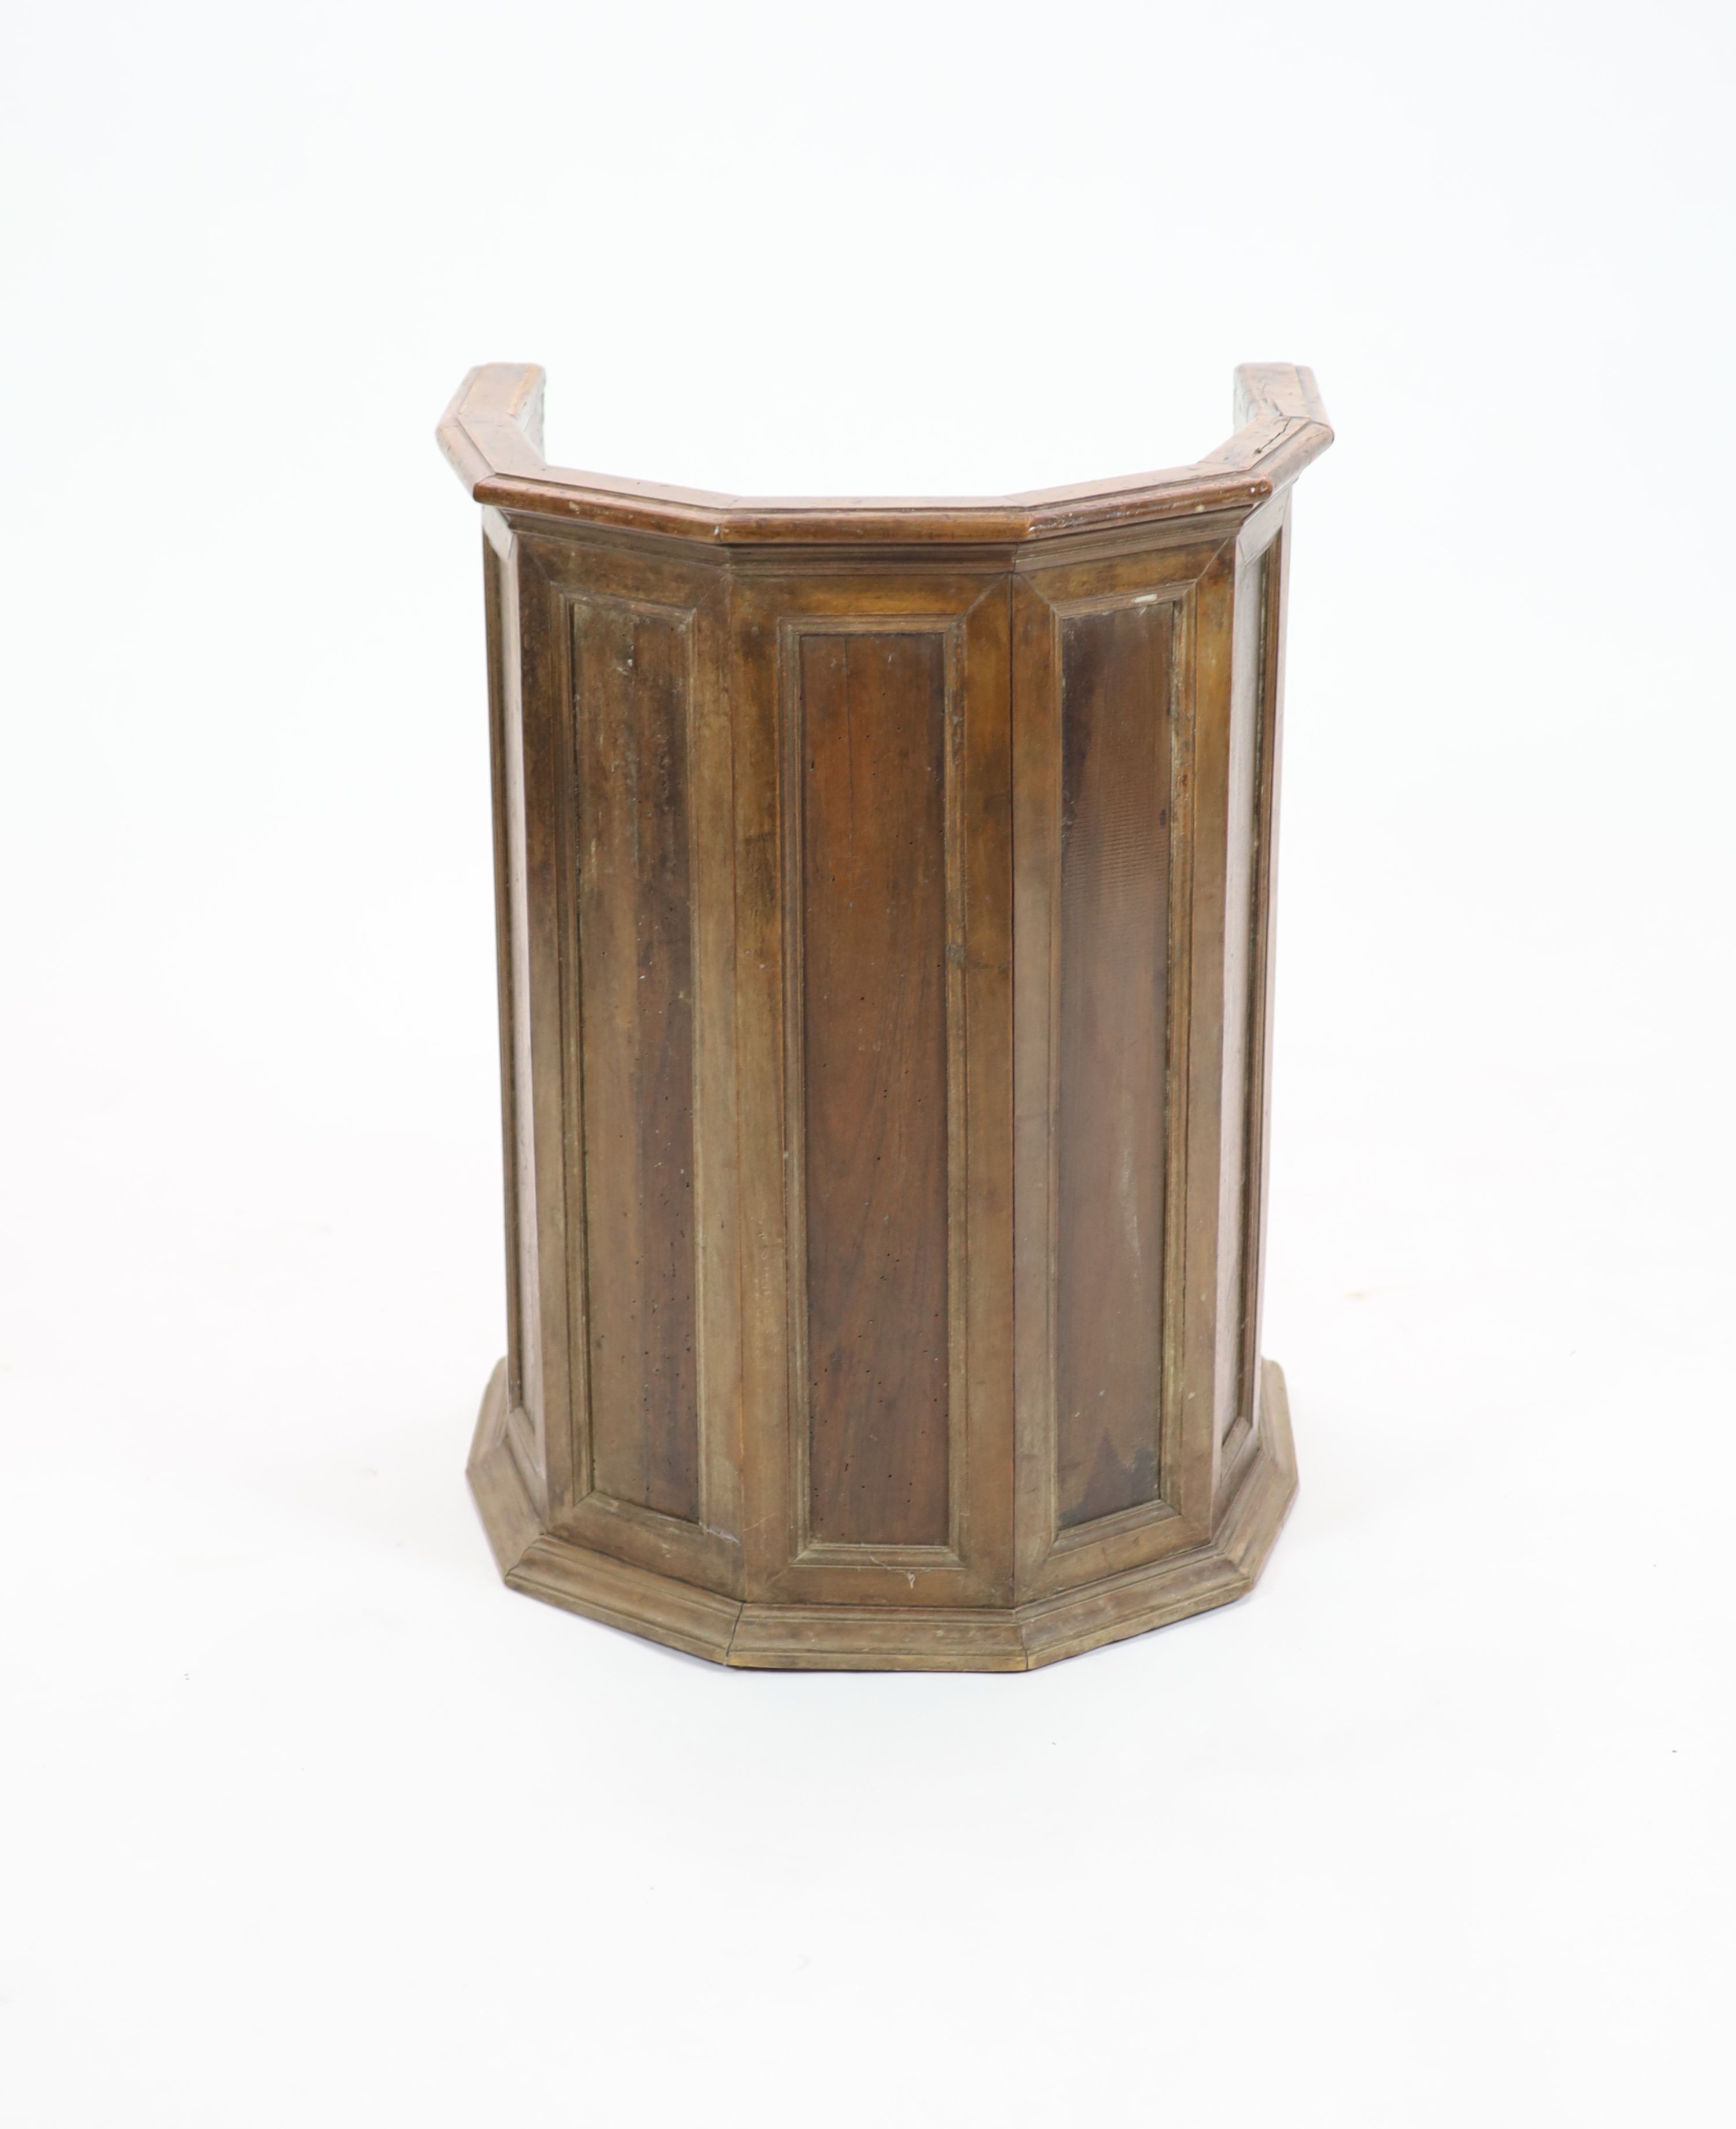 A late 16th century Italian walnut tub chair, possibly Tuscan, having H 79cm. W 60cm. D 46cm.